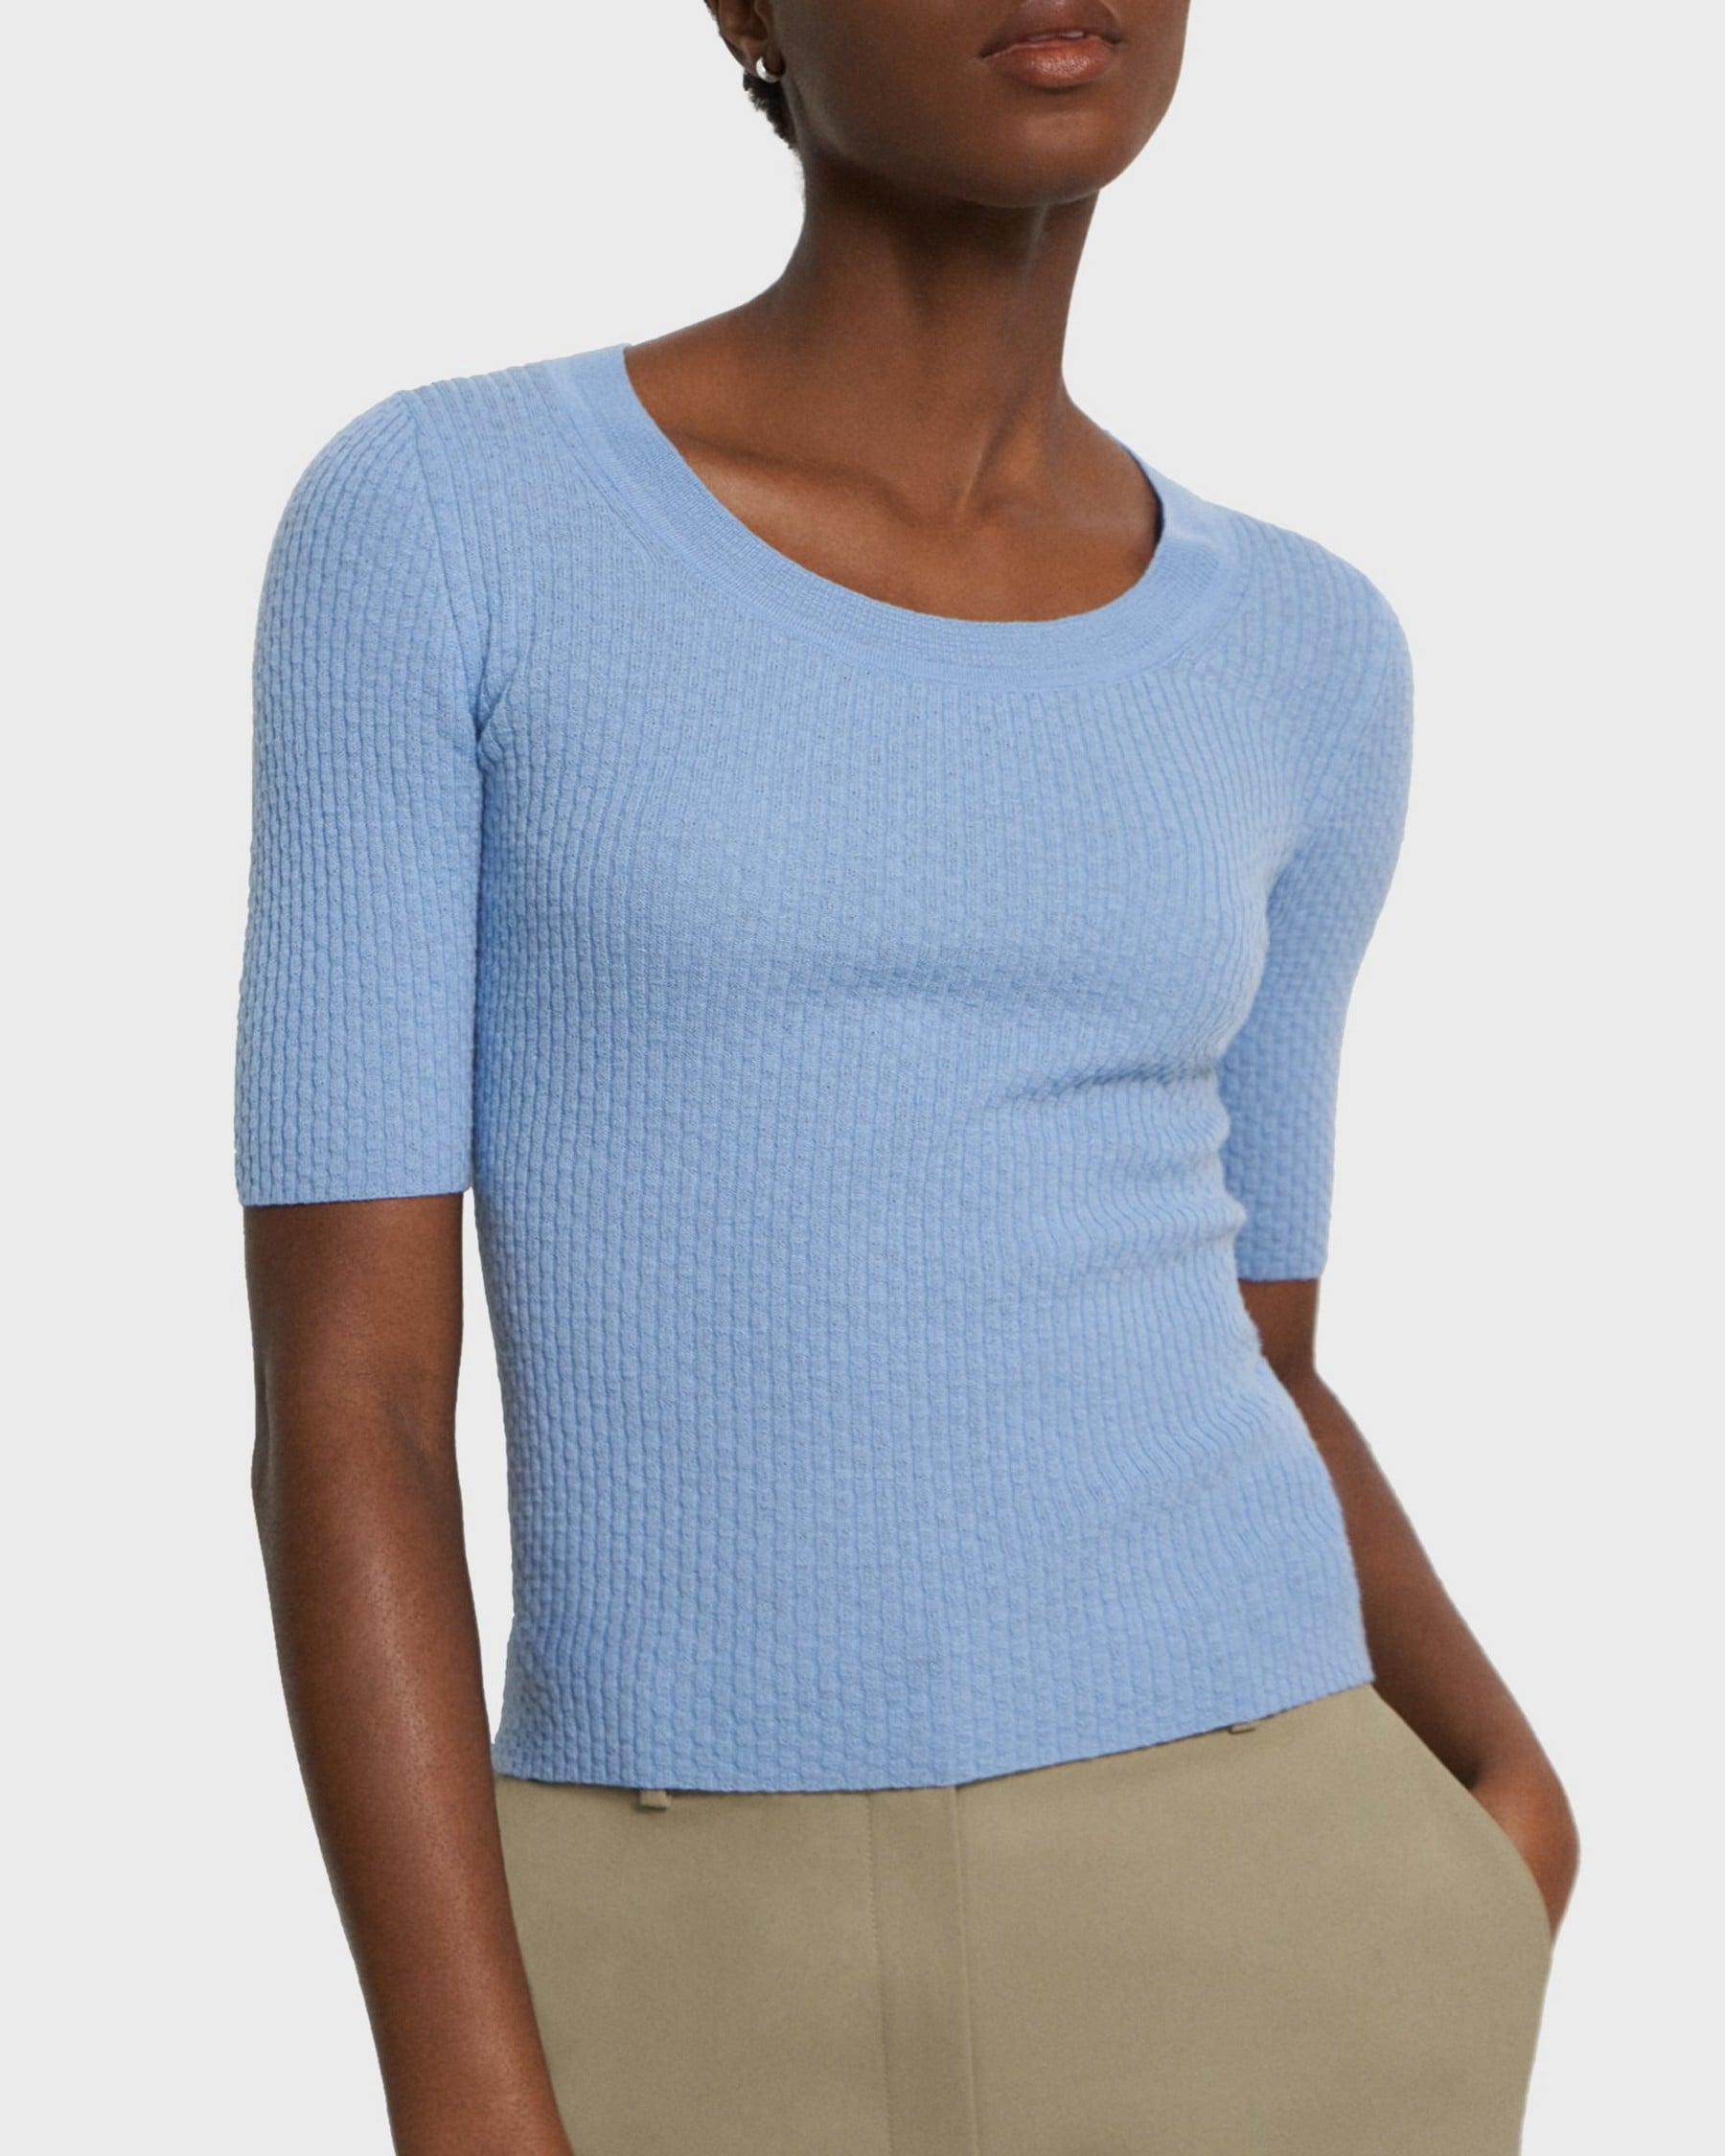 띠어리 Theory Scoop Neck Sweater in Merino Wool,POWDER BLUE